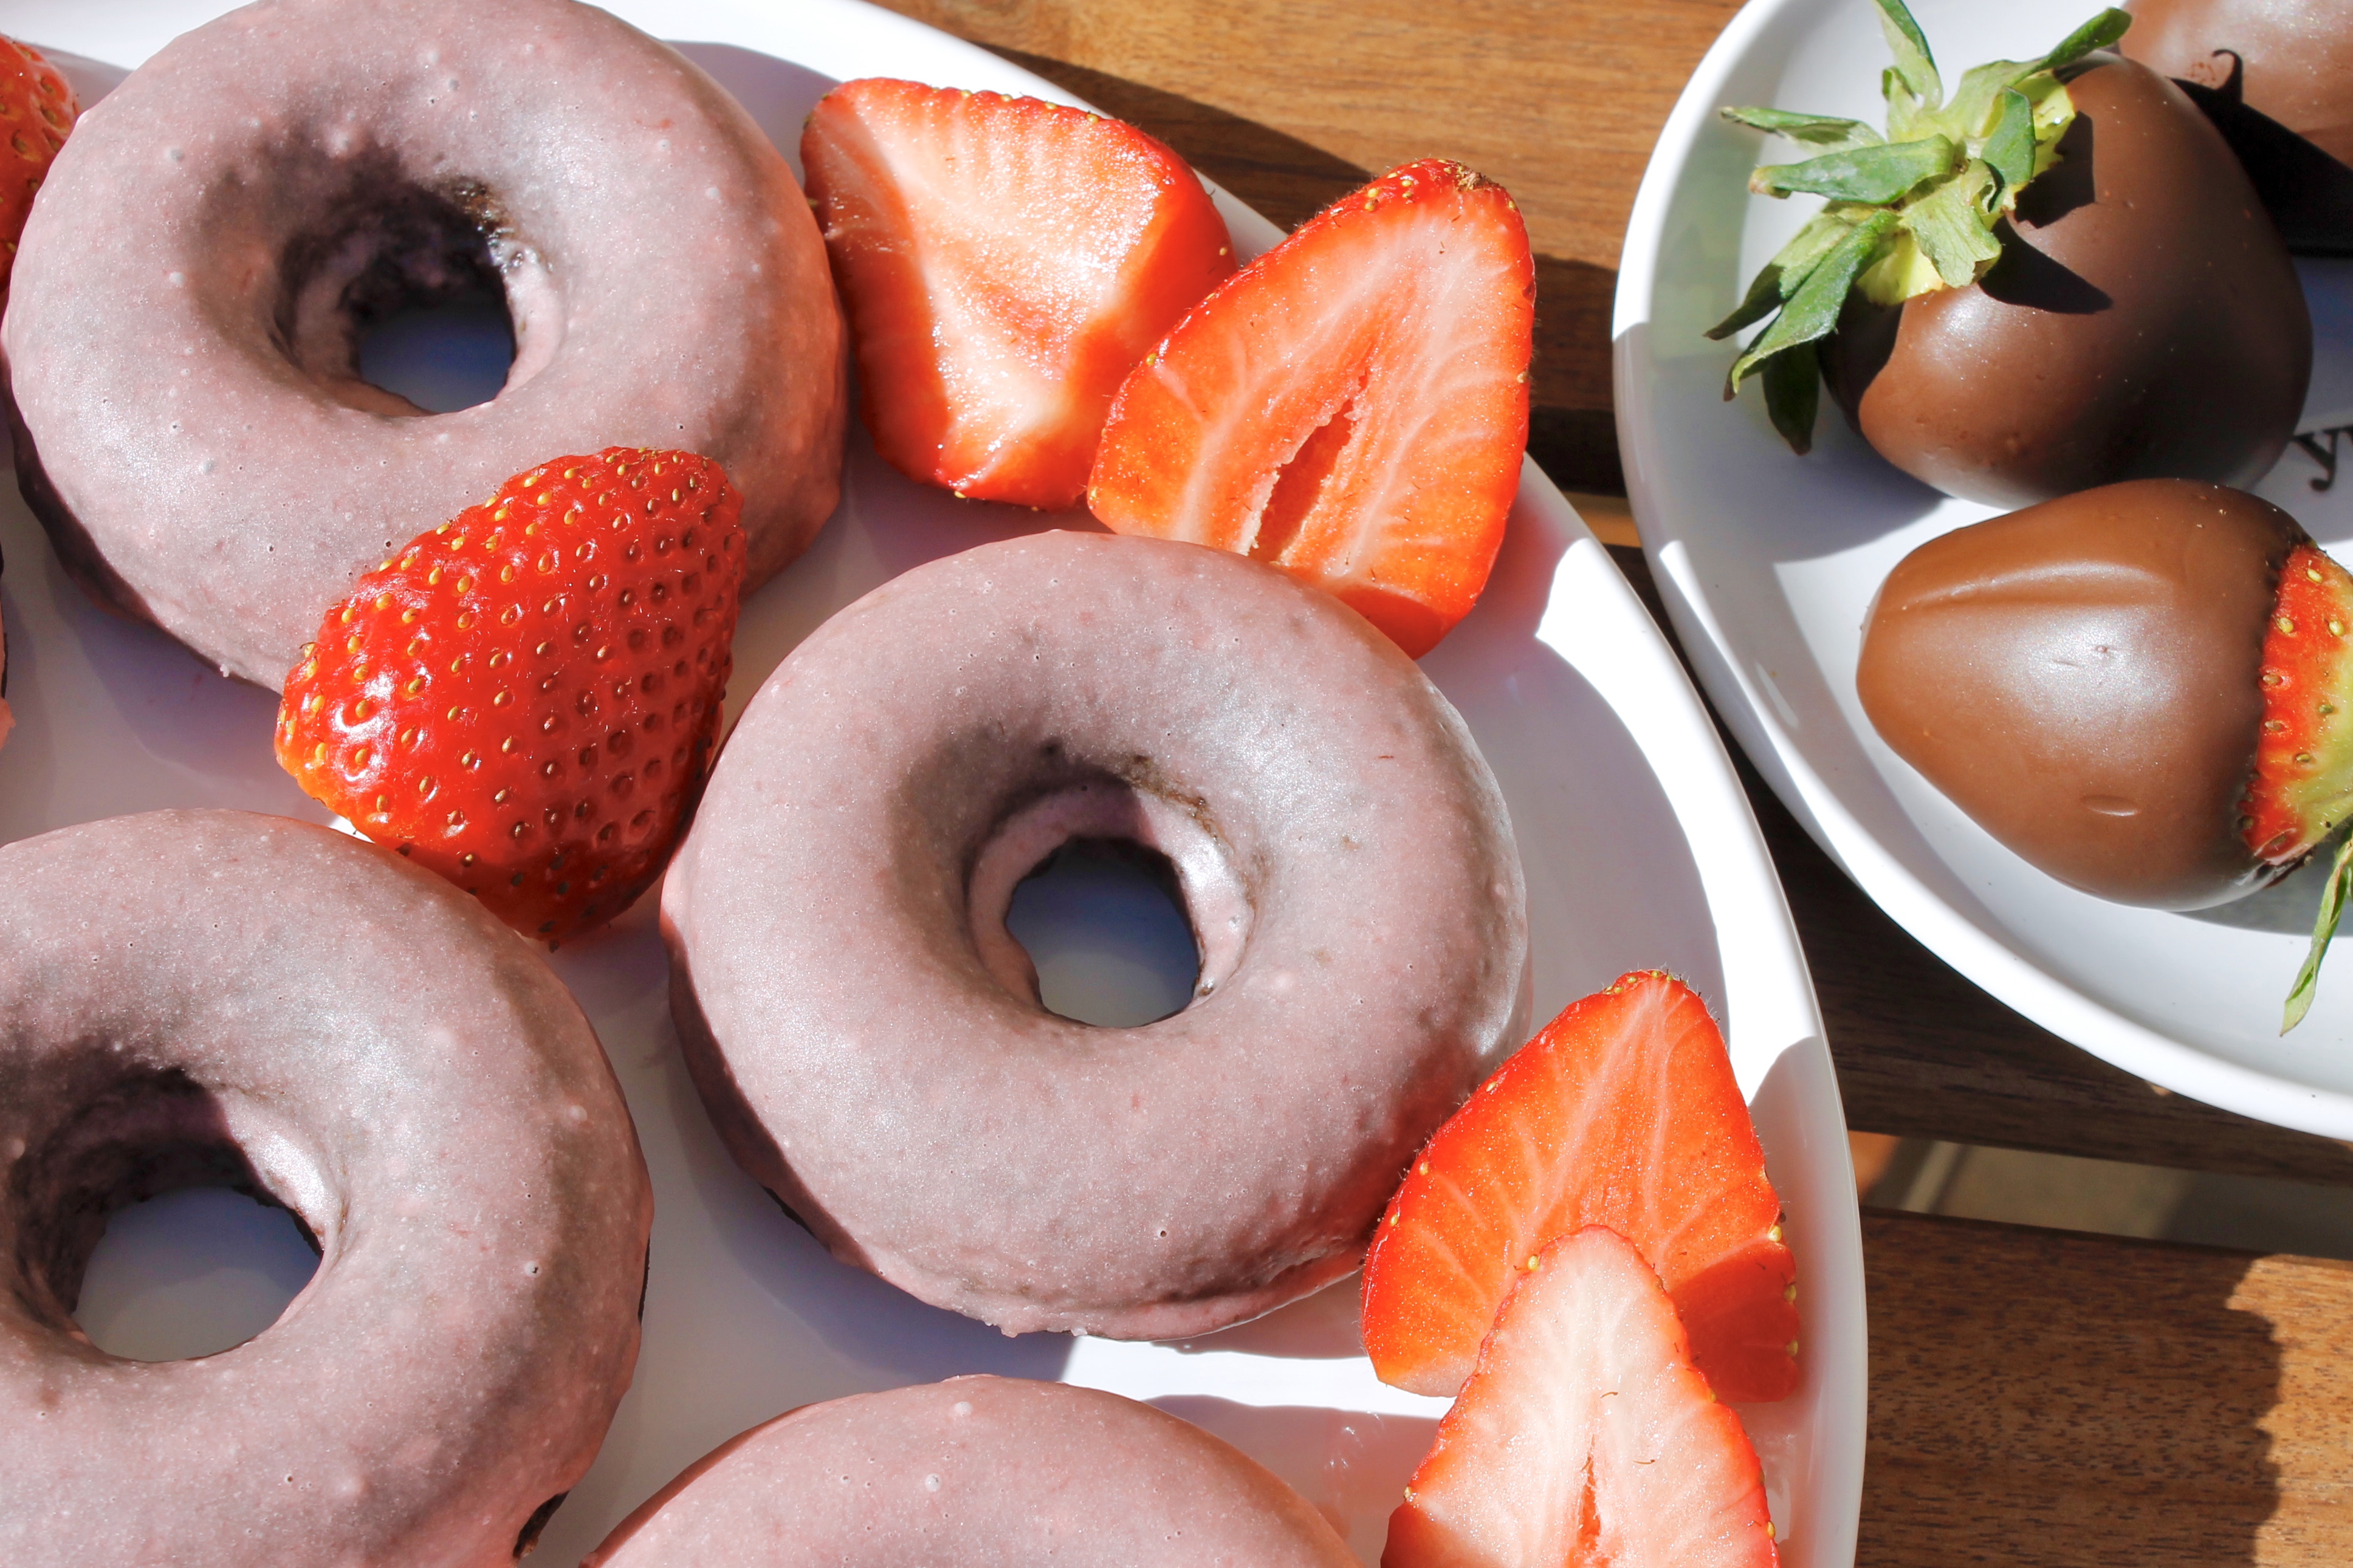 Vegan Chocolate Donuts with Strawberry Glaze